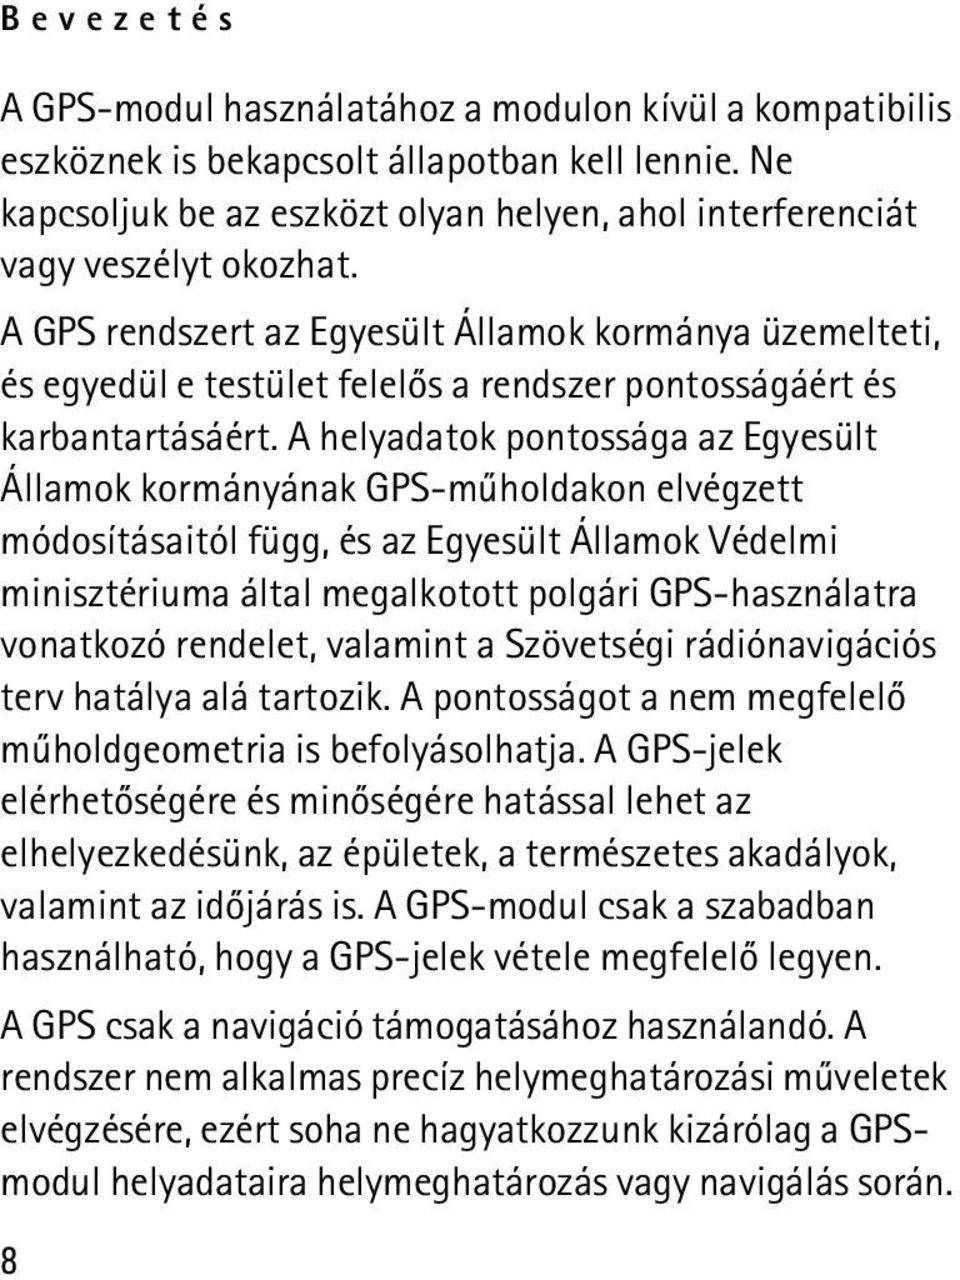 A helyadatok pontossága az Egyesült Államok kormányának GPS-mûholdakon elvégzett módosításaitól függ, és az Egyesült Államok Védelmi minisztériuma által megalkotott polgári GPS-használatra vonatkozó